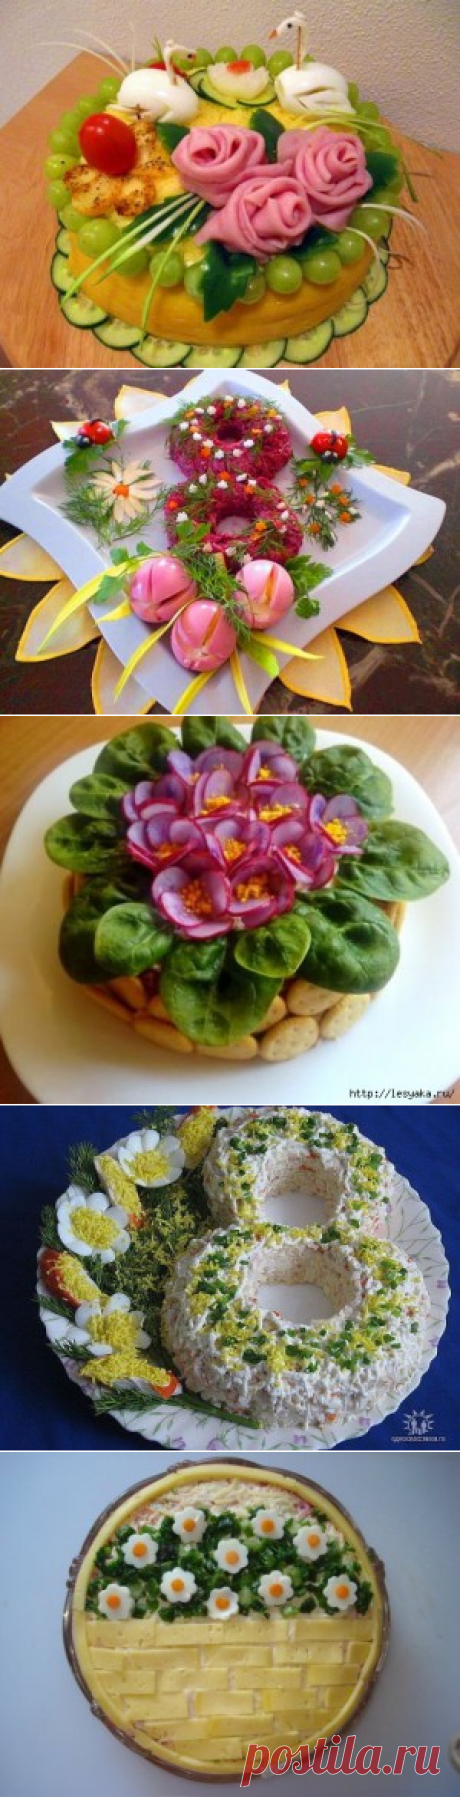 Оформление салатов к 8 марта - пошаговый фото рецептКулинарные рецепты